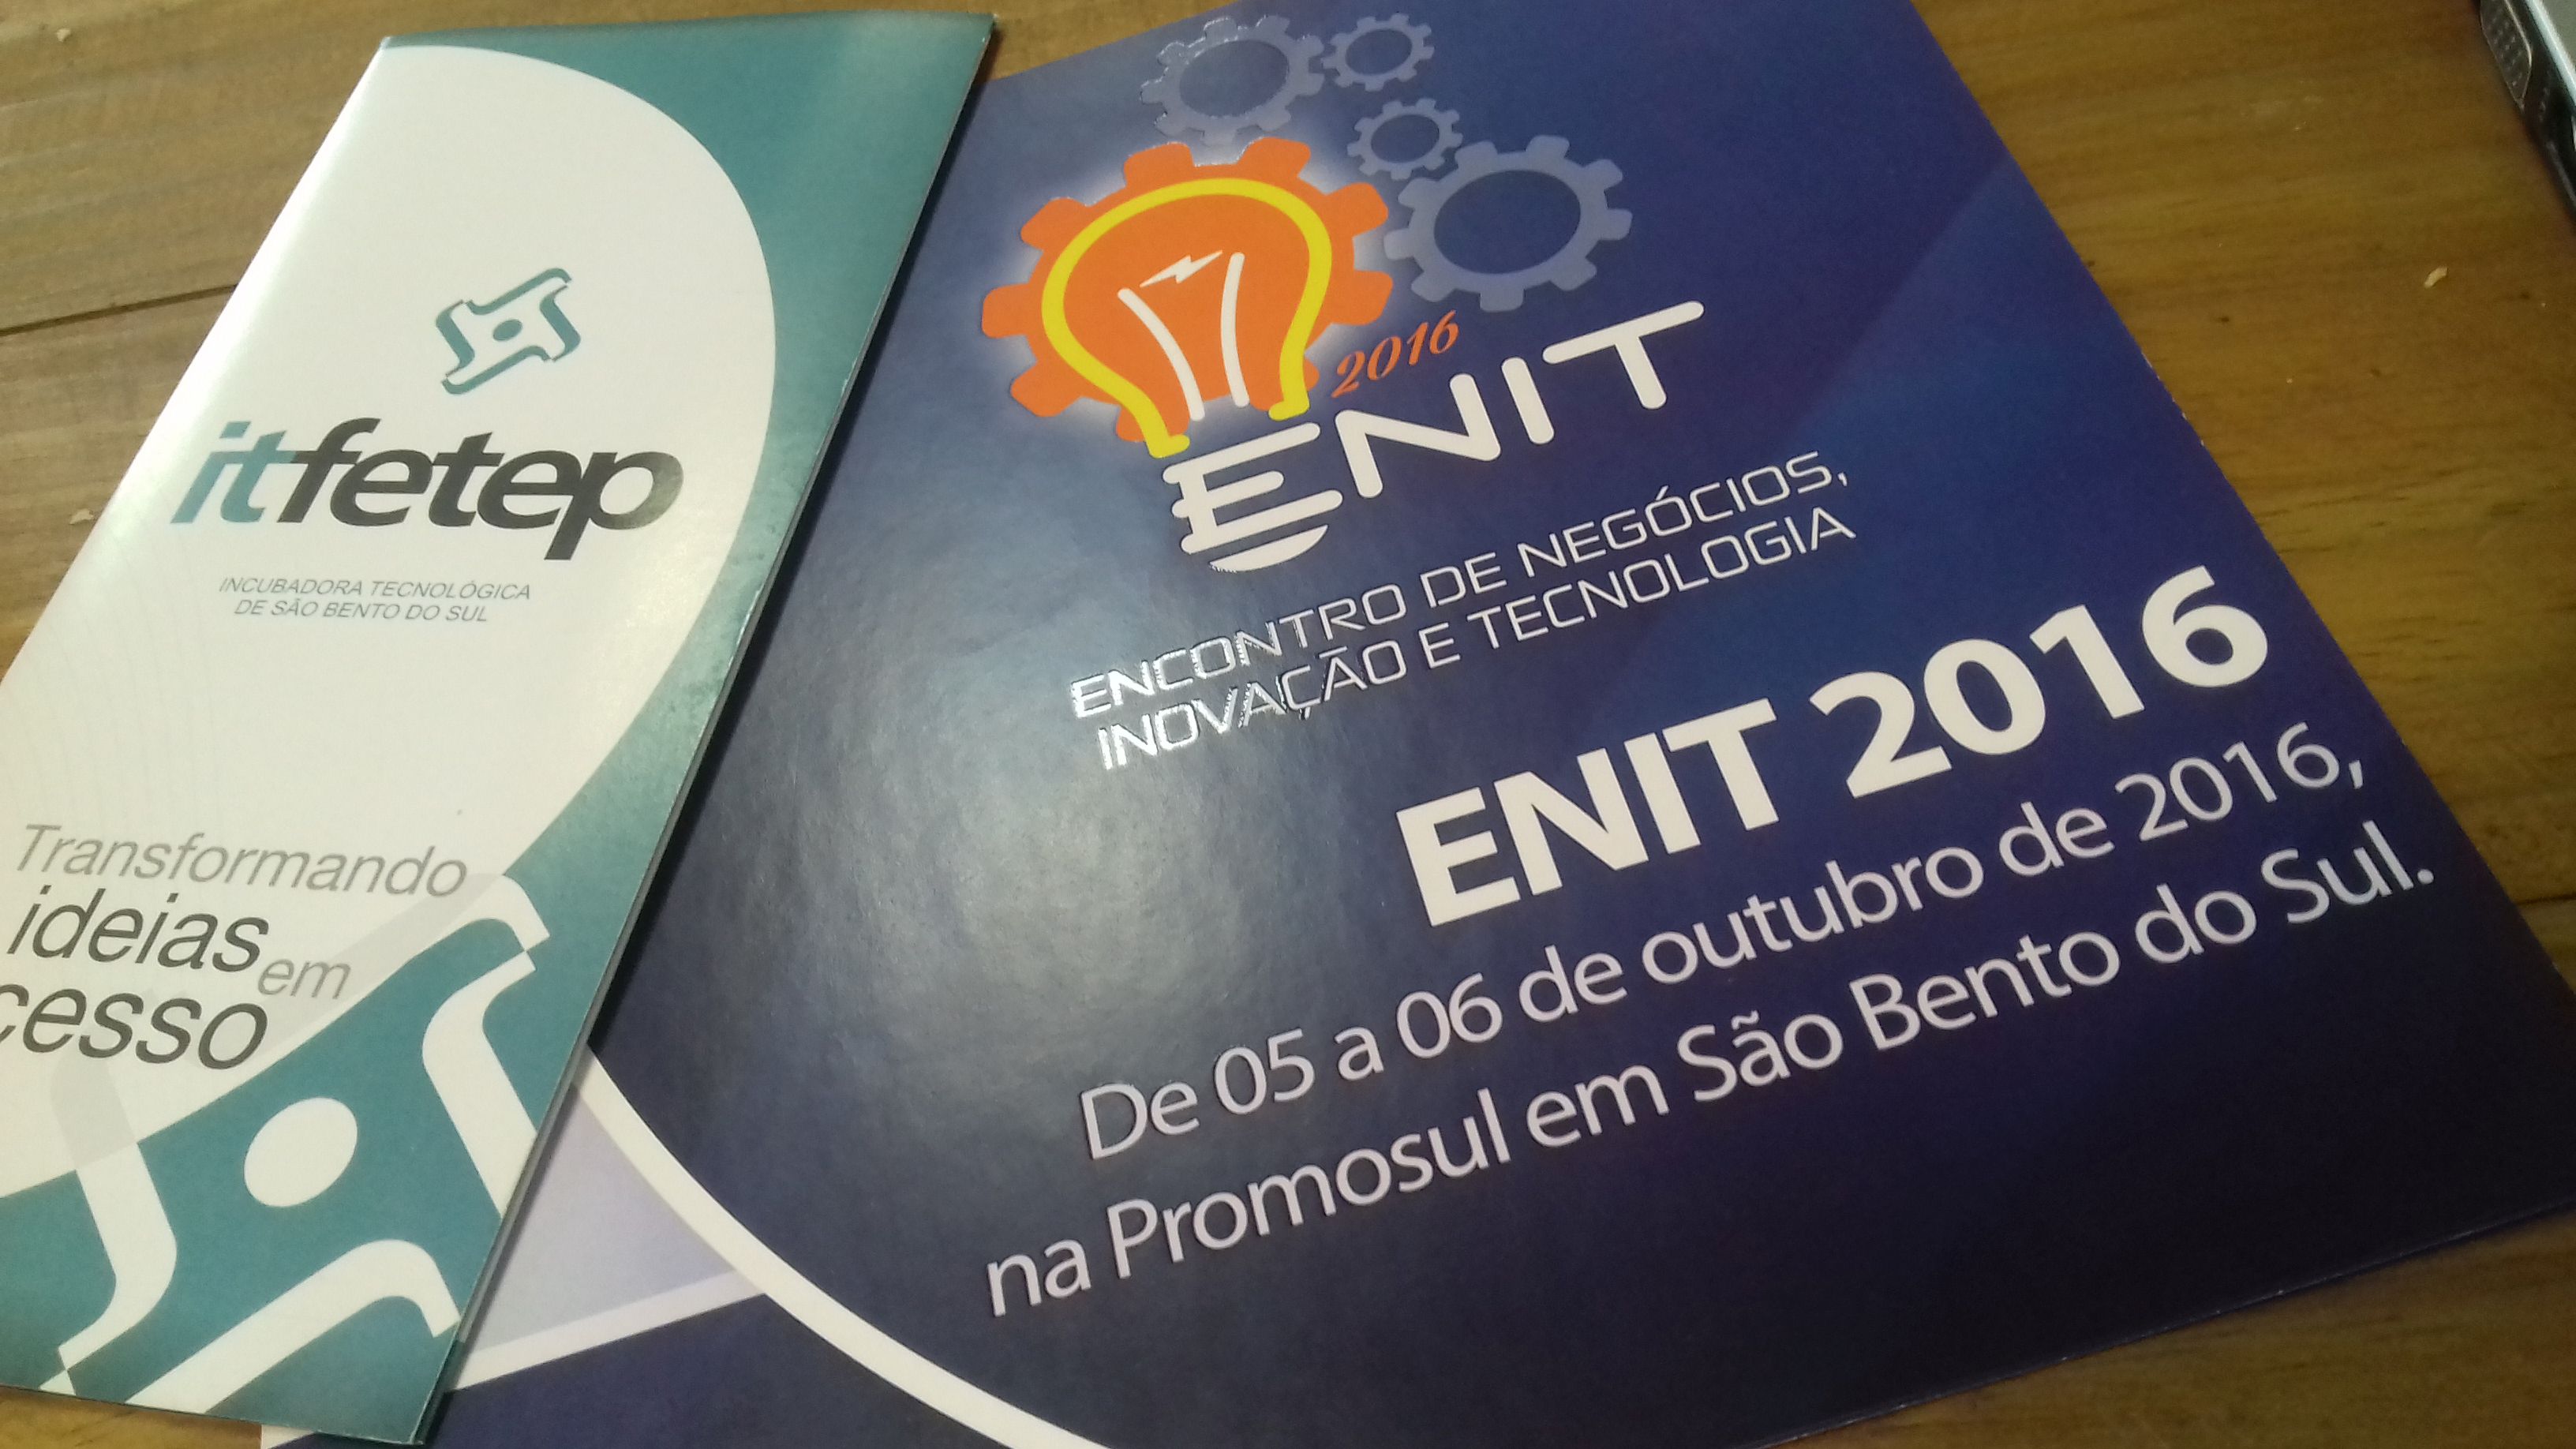 ENIT E INOVA 2016 São Bento Do Sul